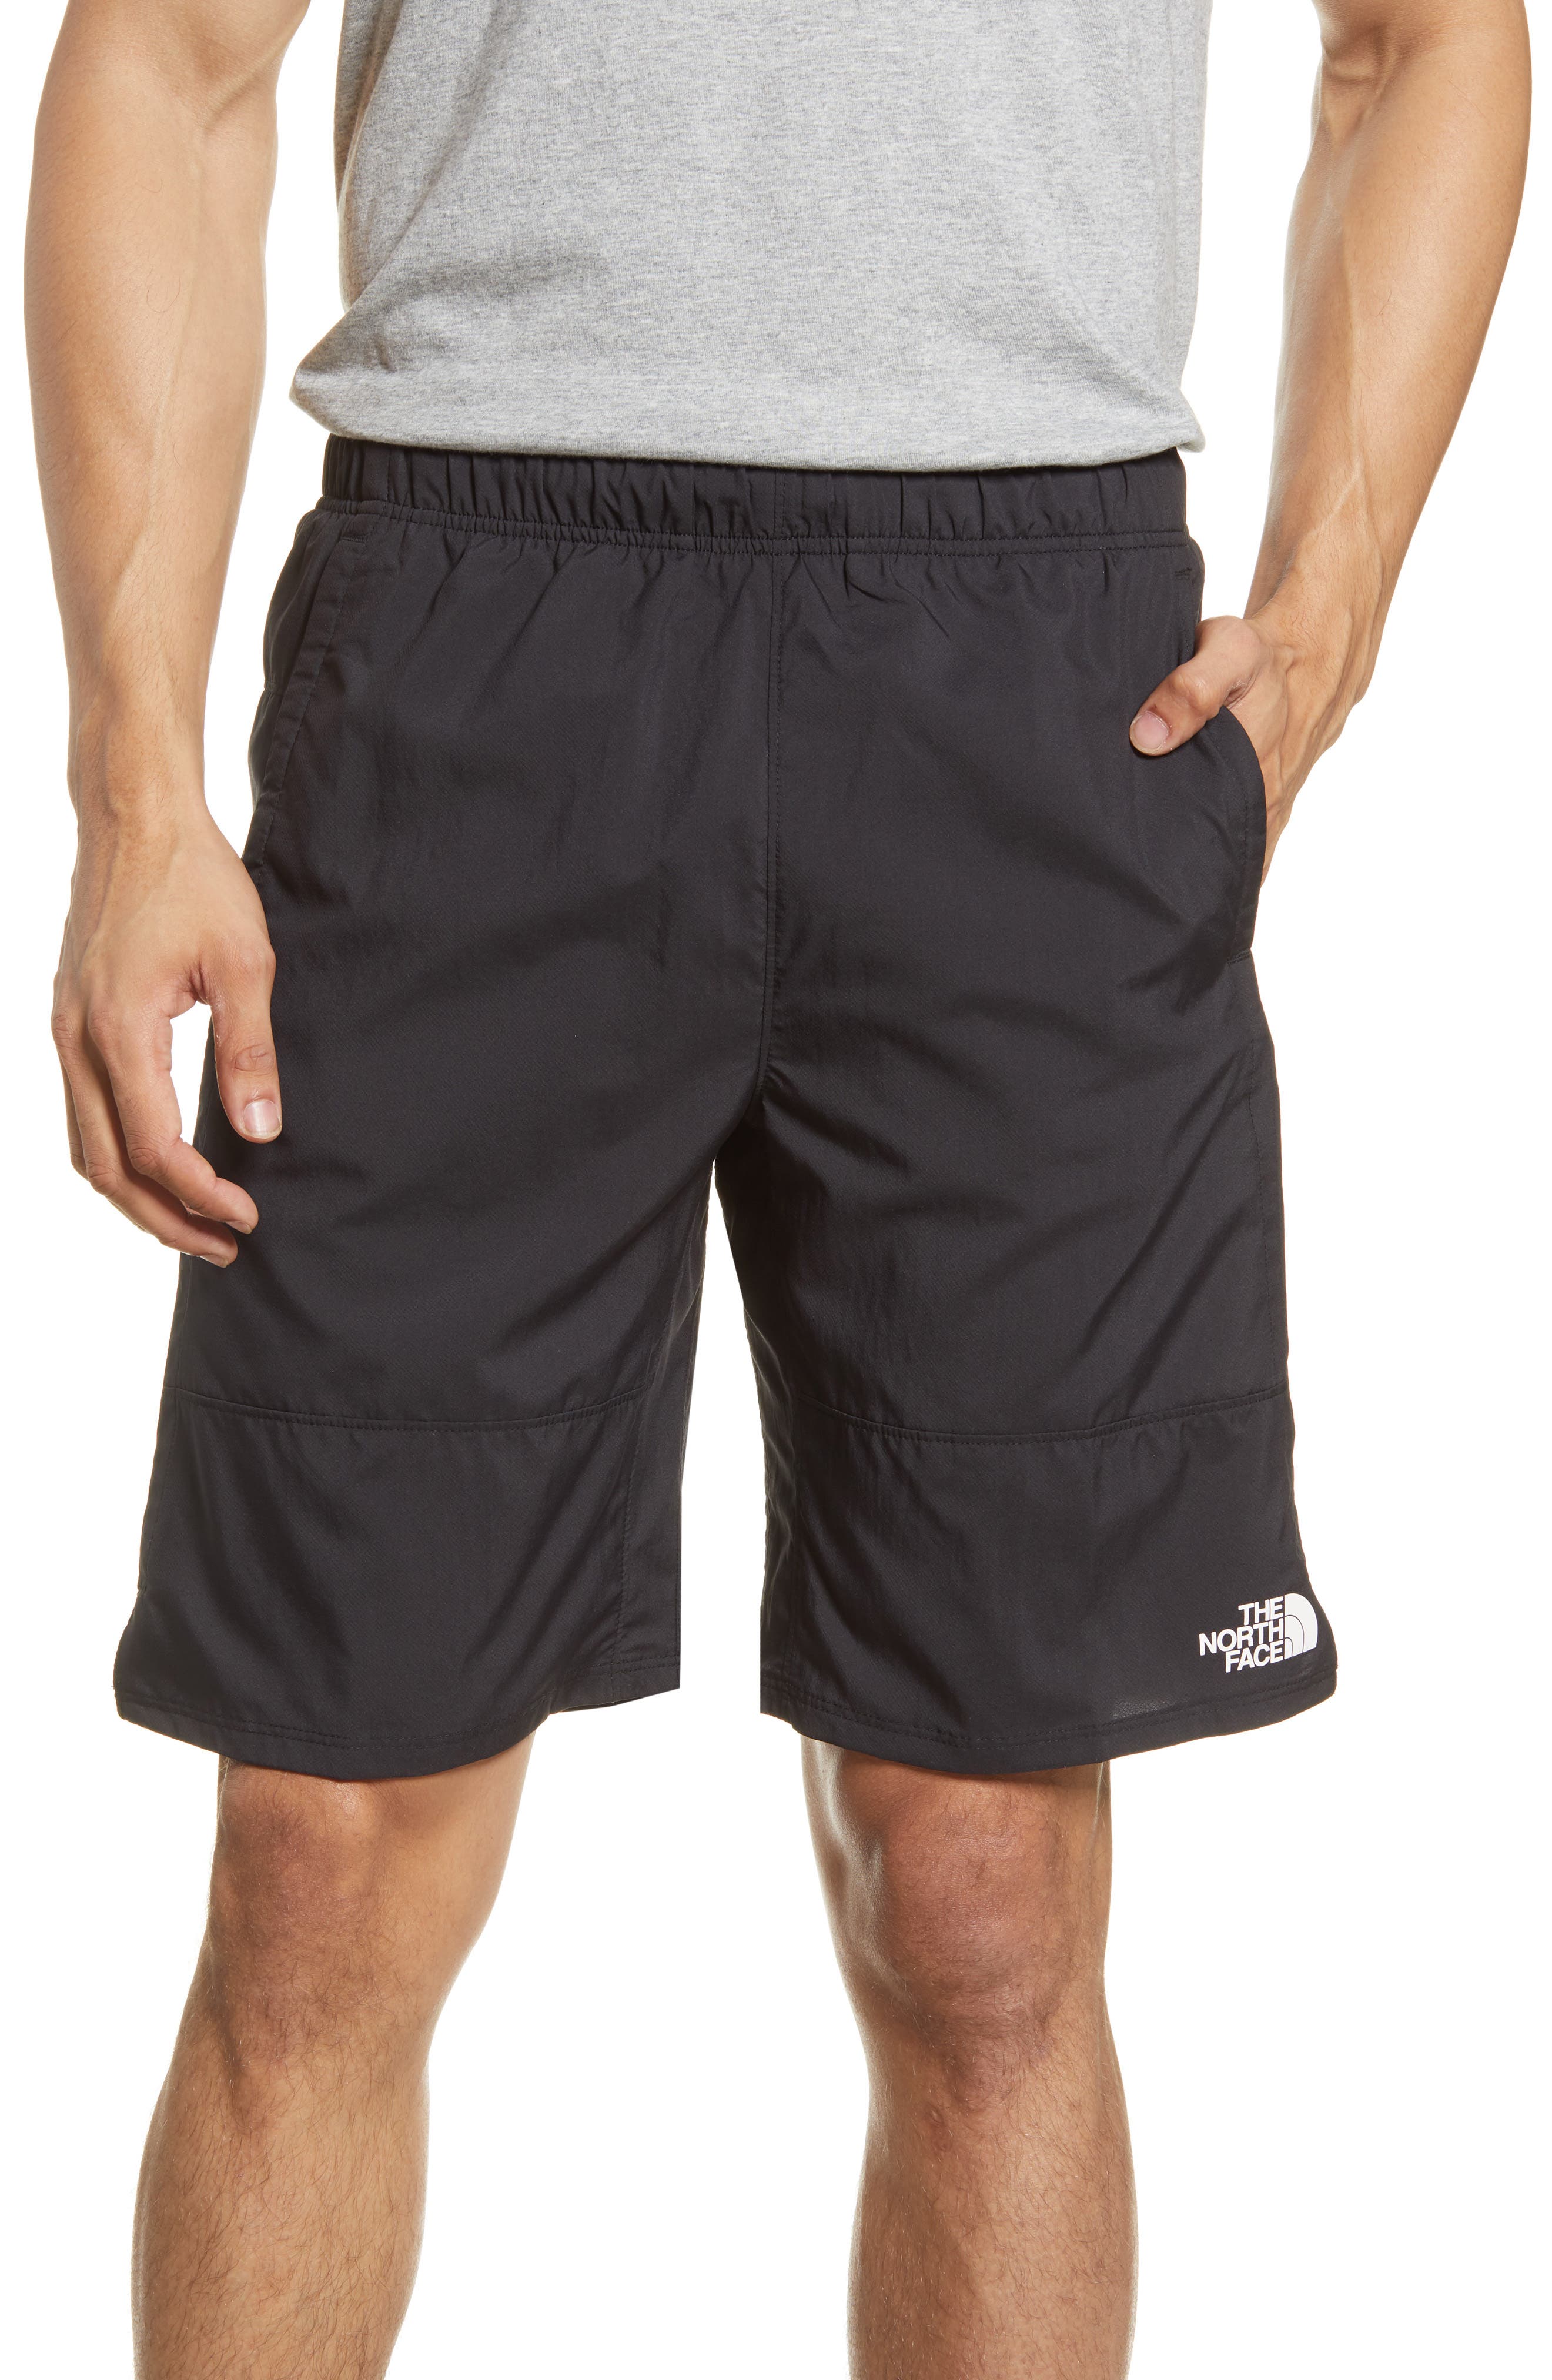 north face active shorts